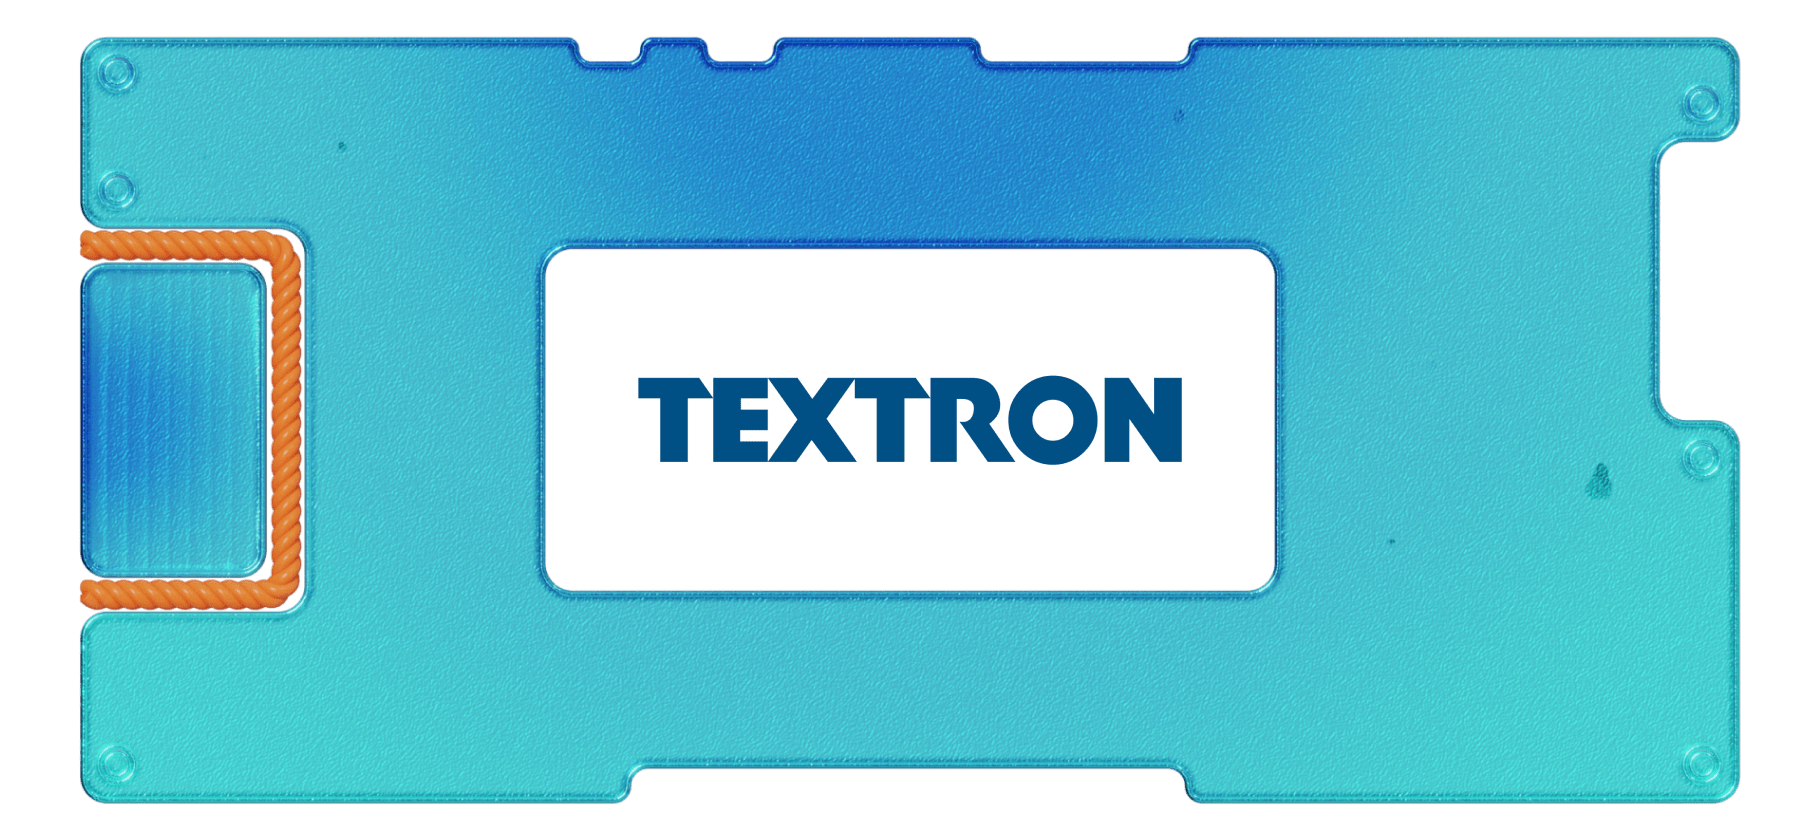 Cessna стоит мессы: обзор промышленного конгломерата Textron